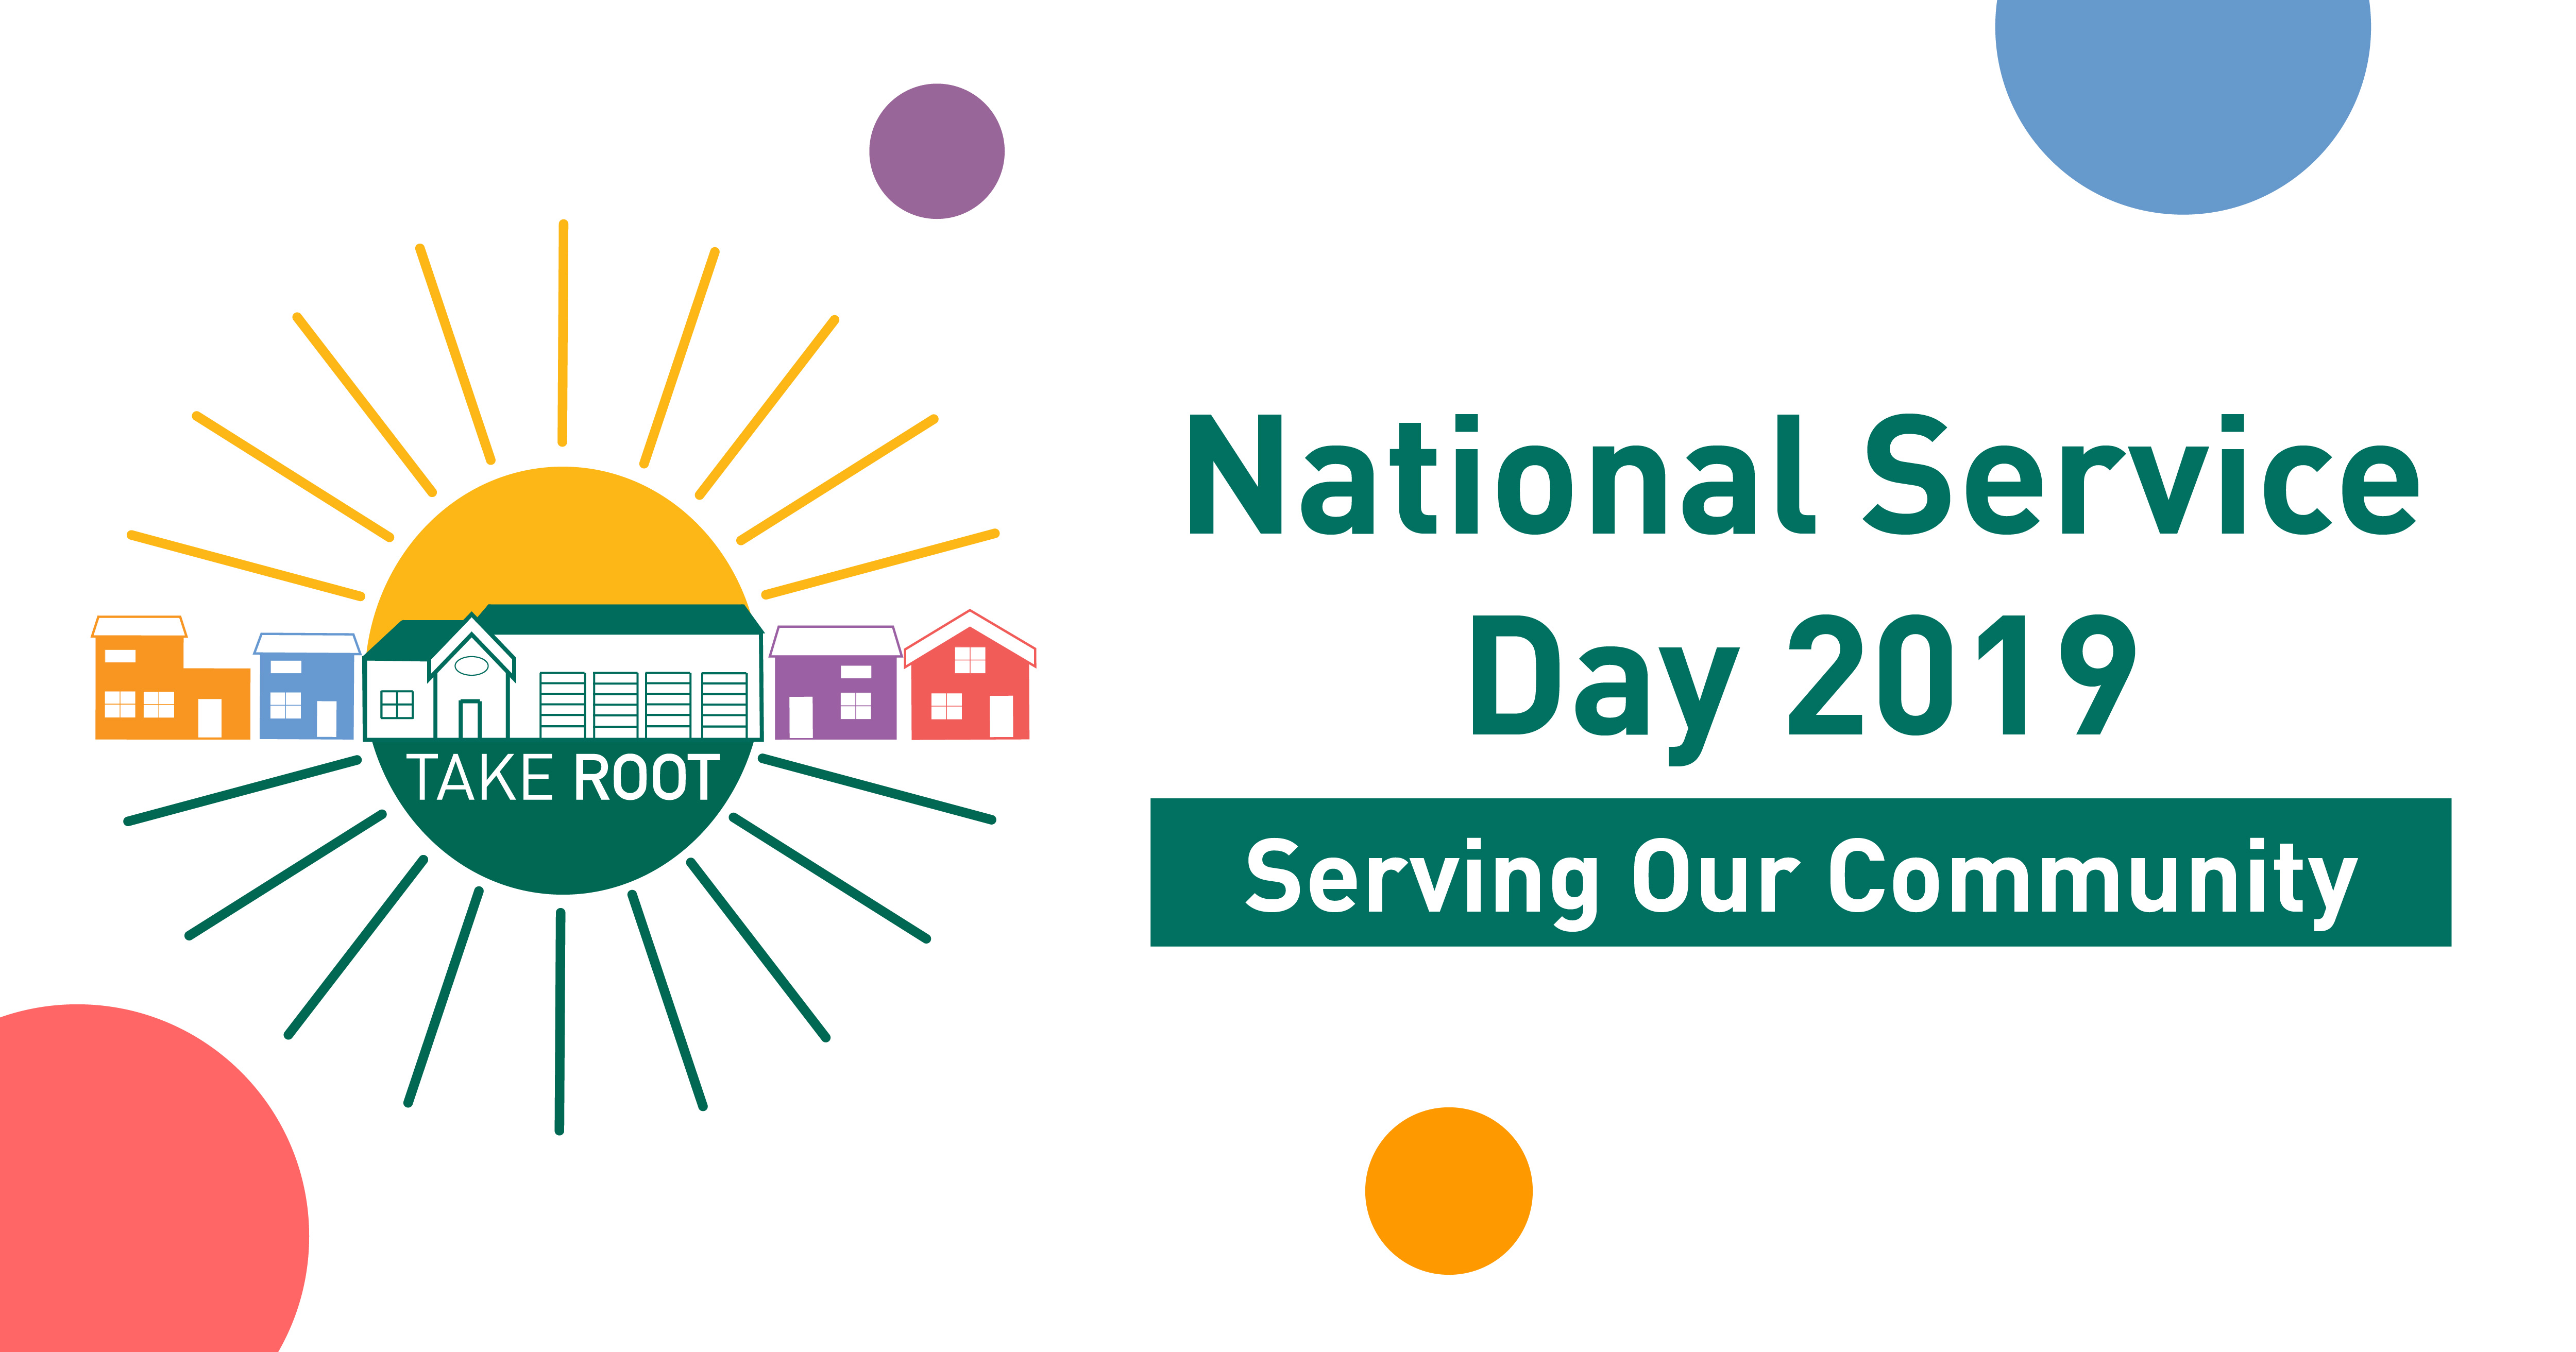 Celebrating National Service Day 2019